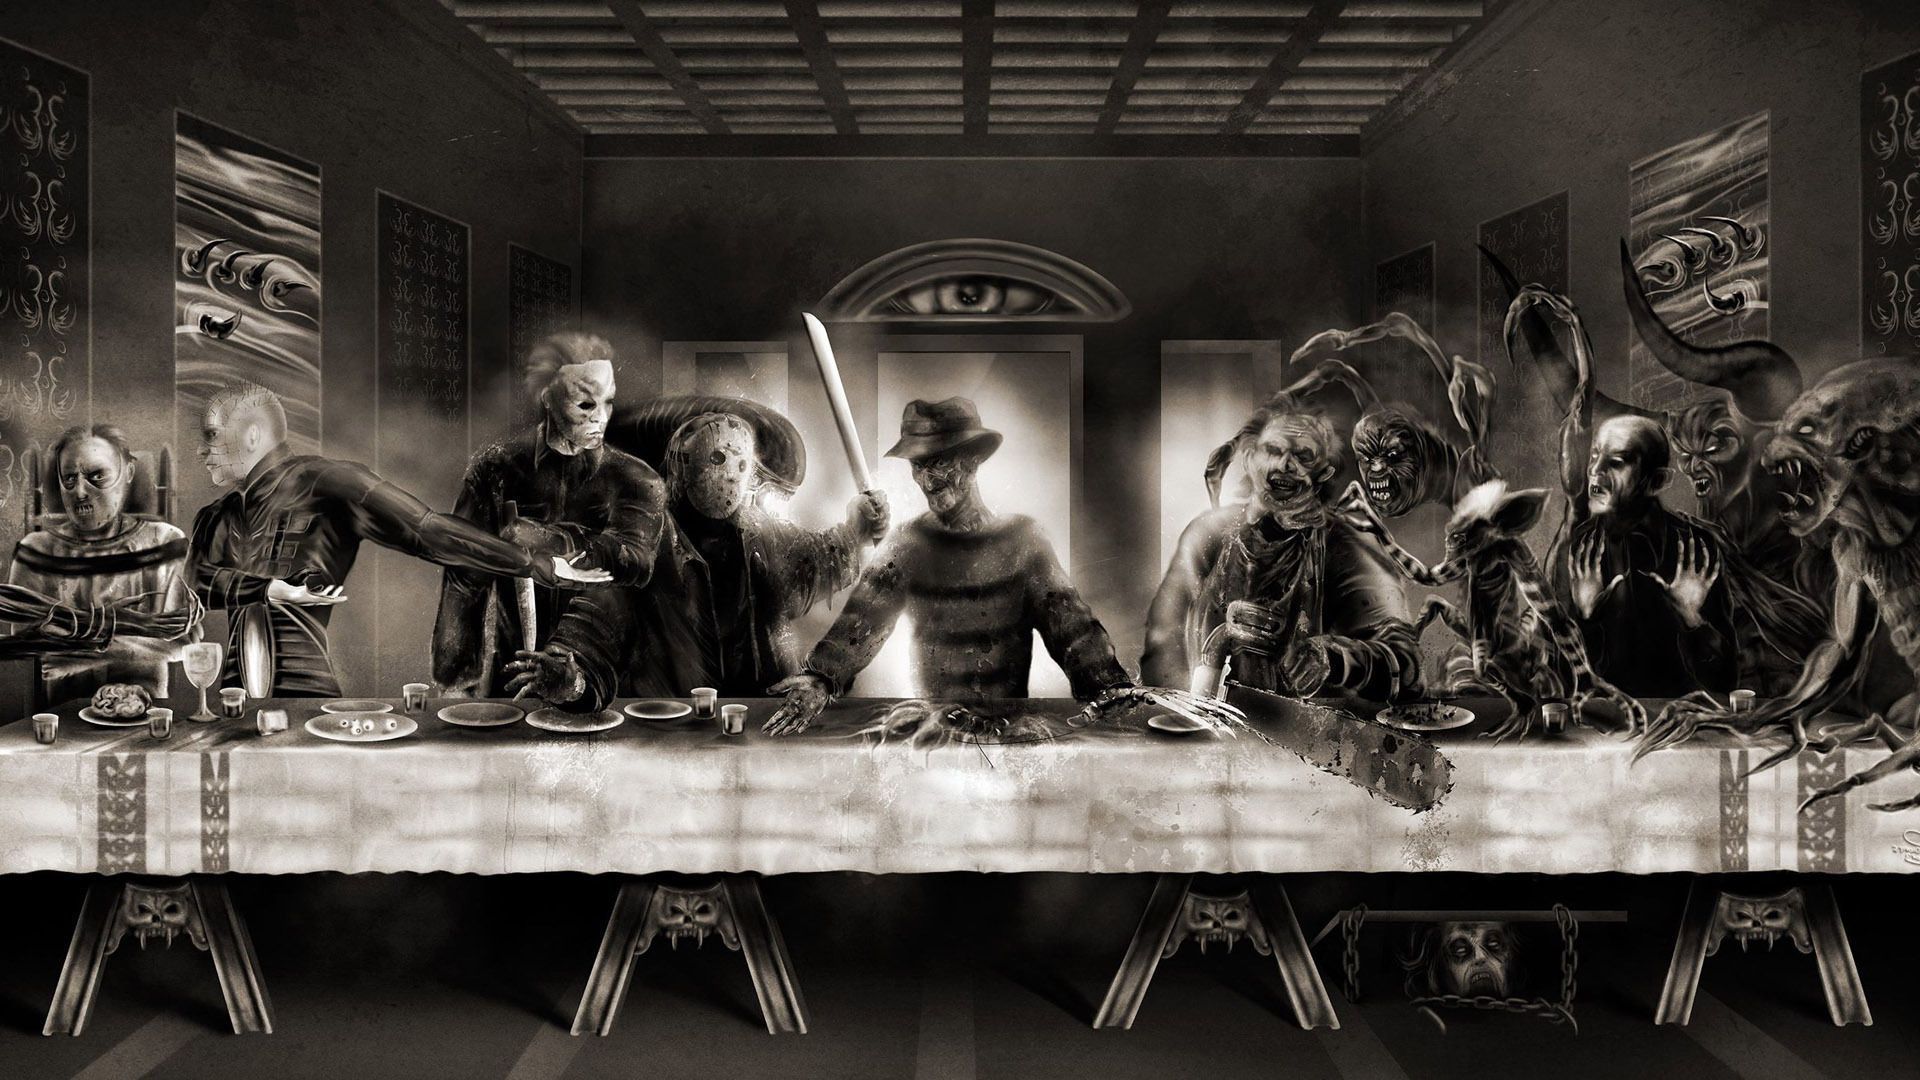 HORROR. Horror Last Supper wallpaper. Creatures